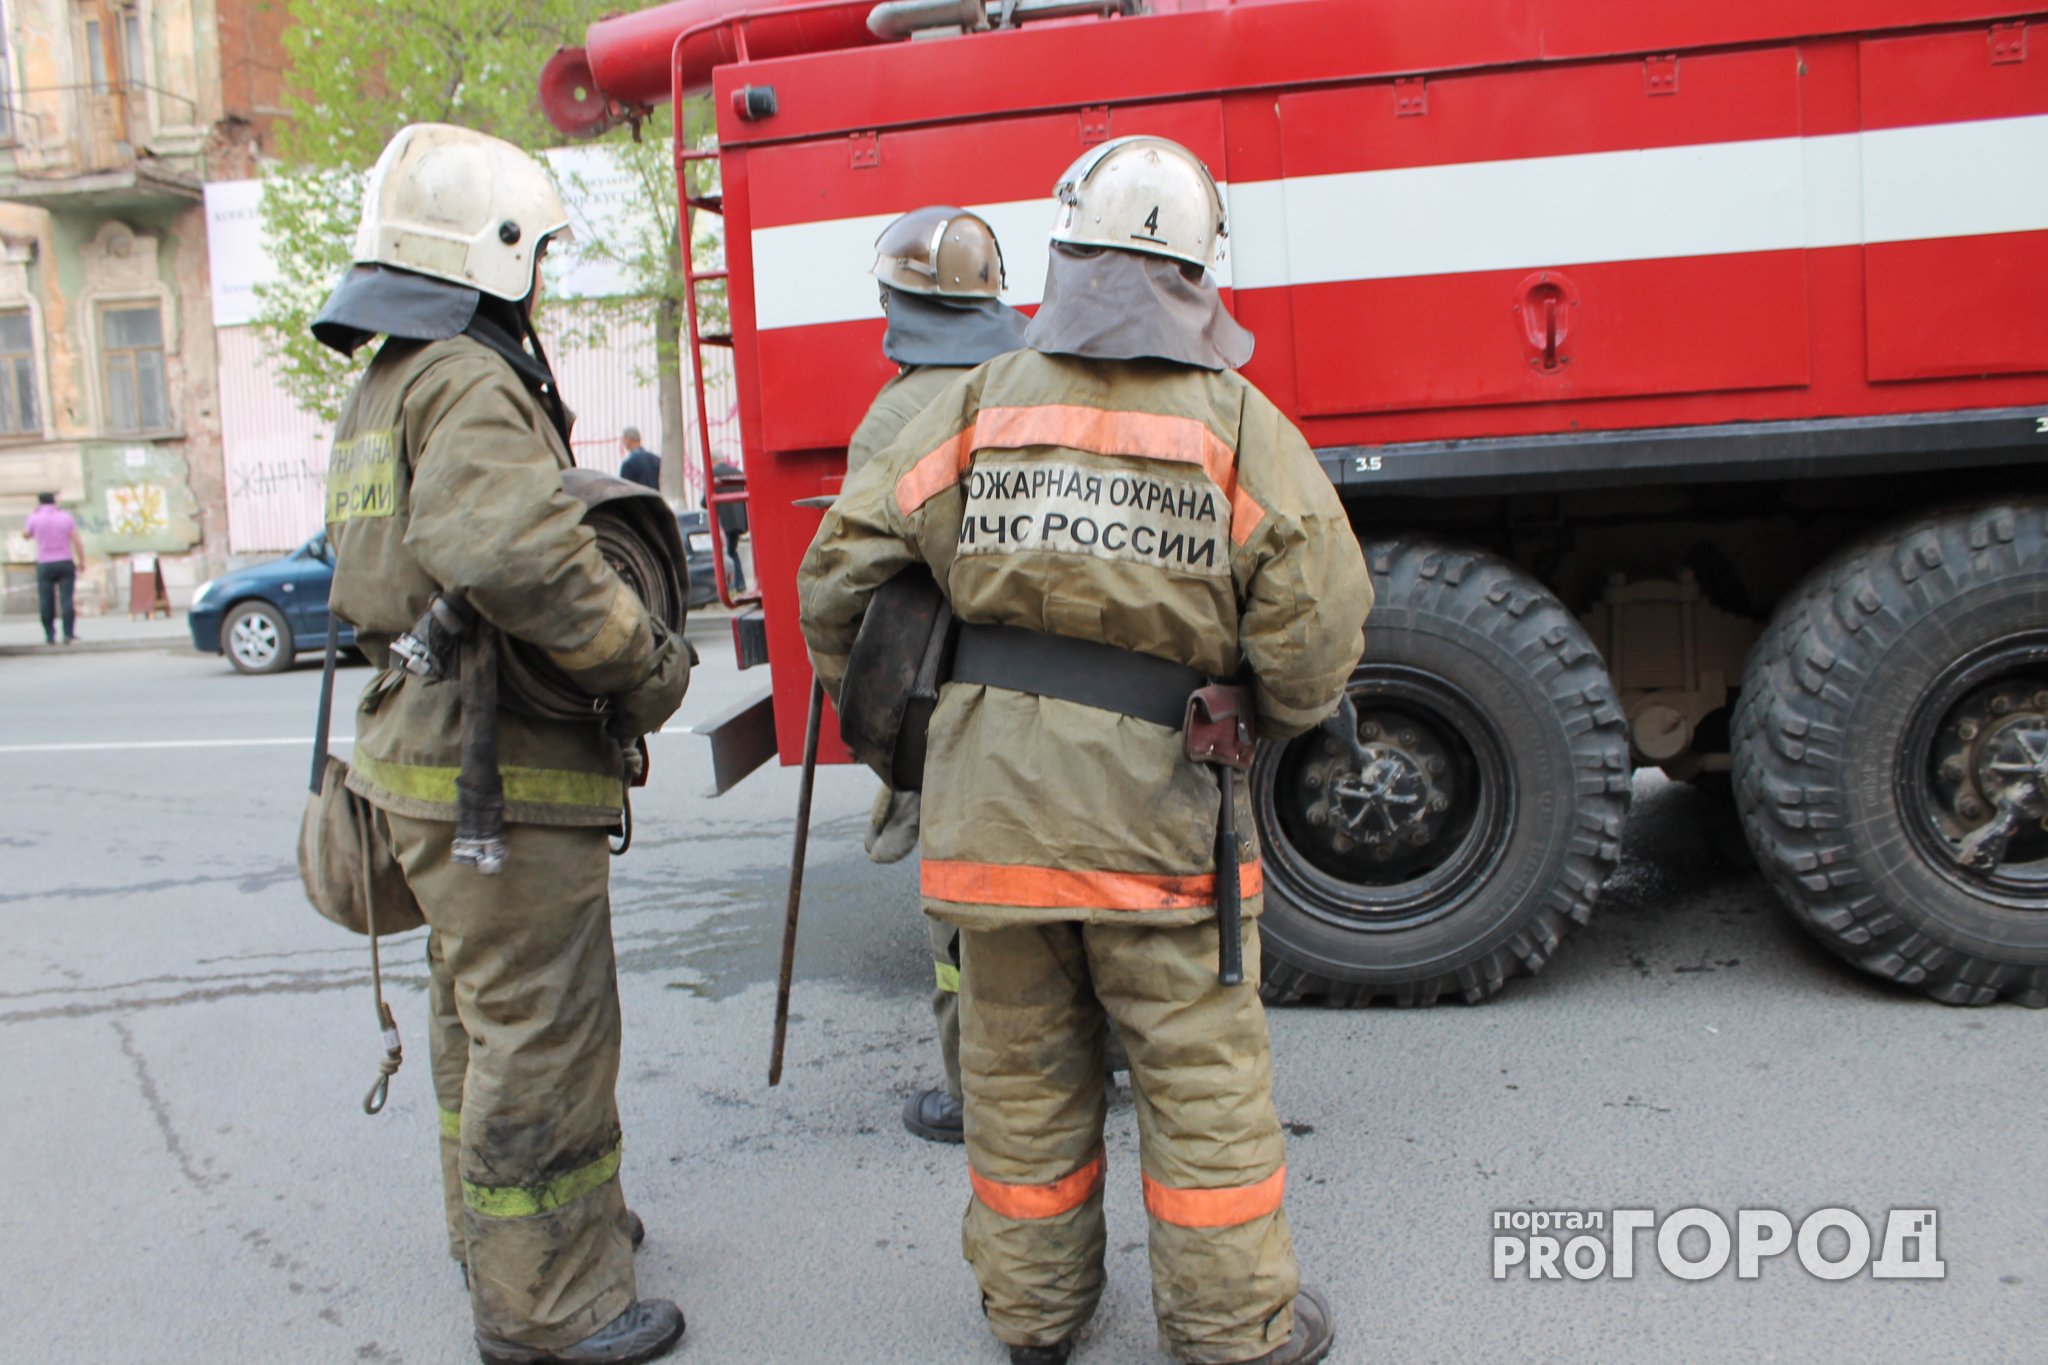 Пожар на Новоселов - загорелась квартира в пятиэтажке. Пострадал пенсионер